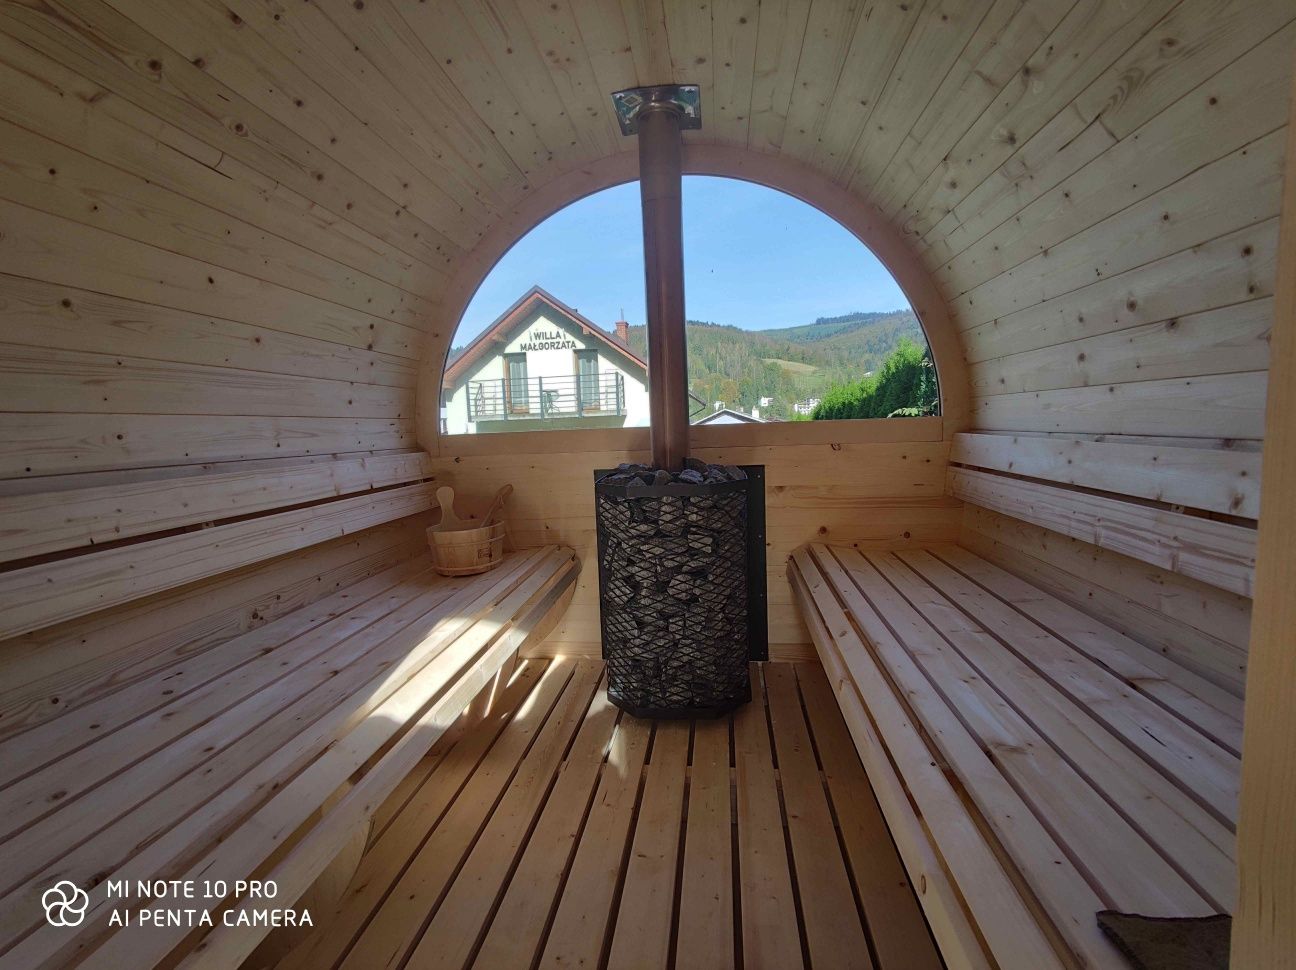 Willa Małgorzata basen sauna  jacuzzi klima dom na wyłączność 11 osób